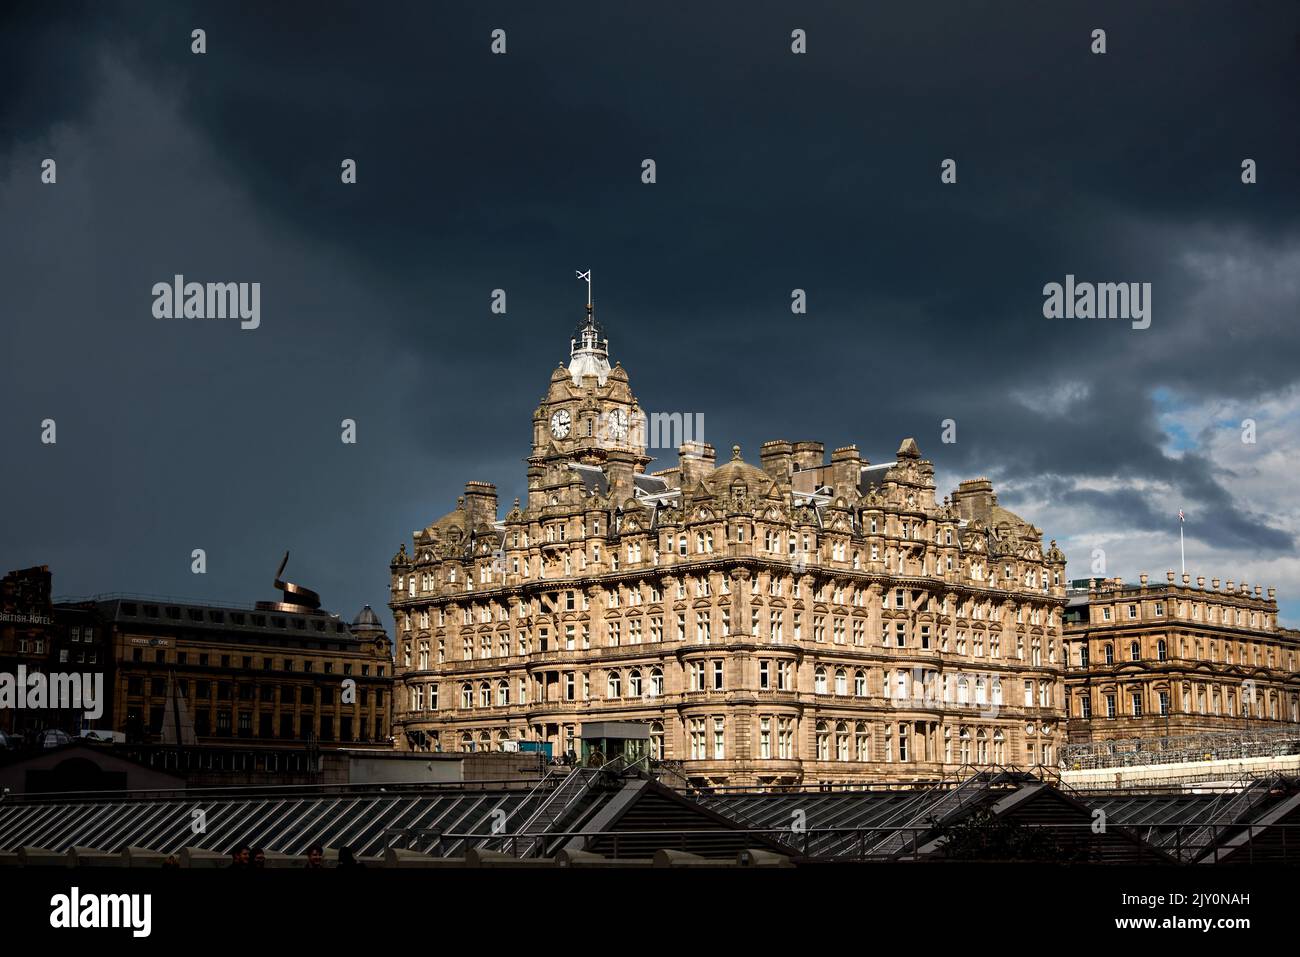 Das Sonnenlicht fällt auf das Balmoral Hotel in der Princes Street, und es kommen immer mehr Regenwolken. Edinburgh, Schottland, Großbritannien. Stockfoto